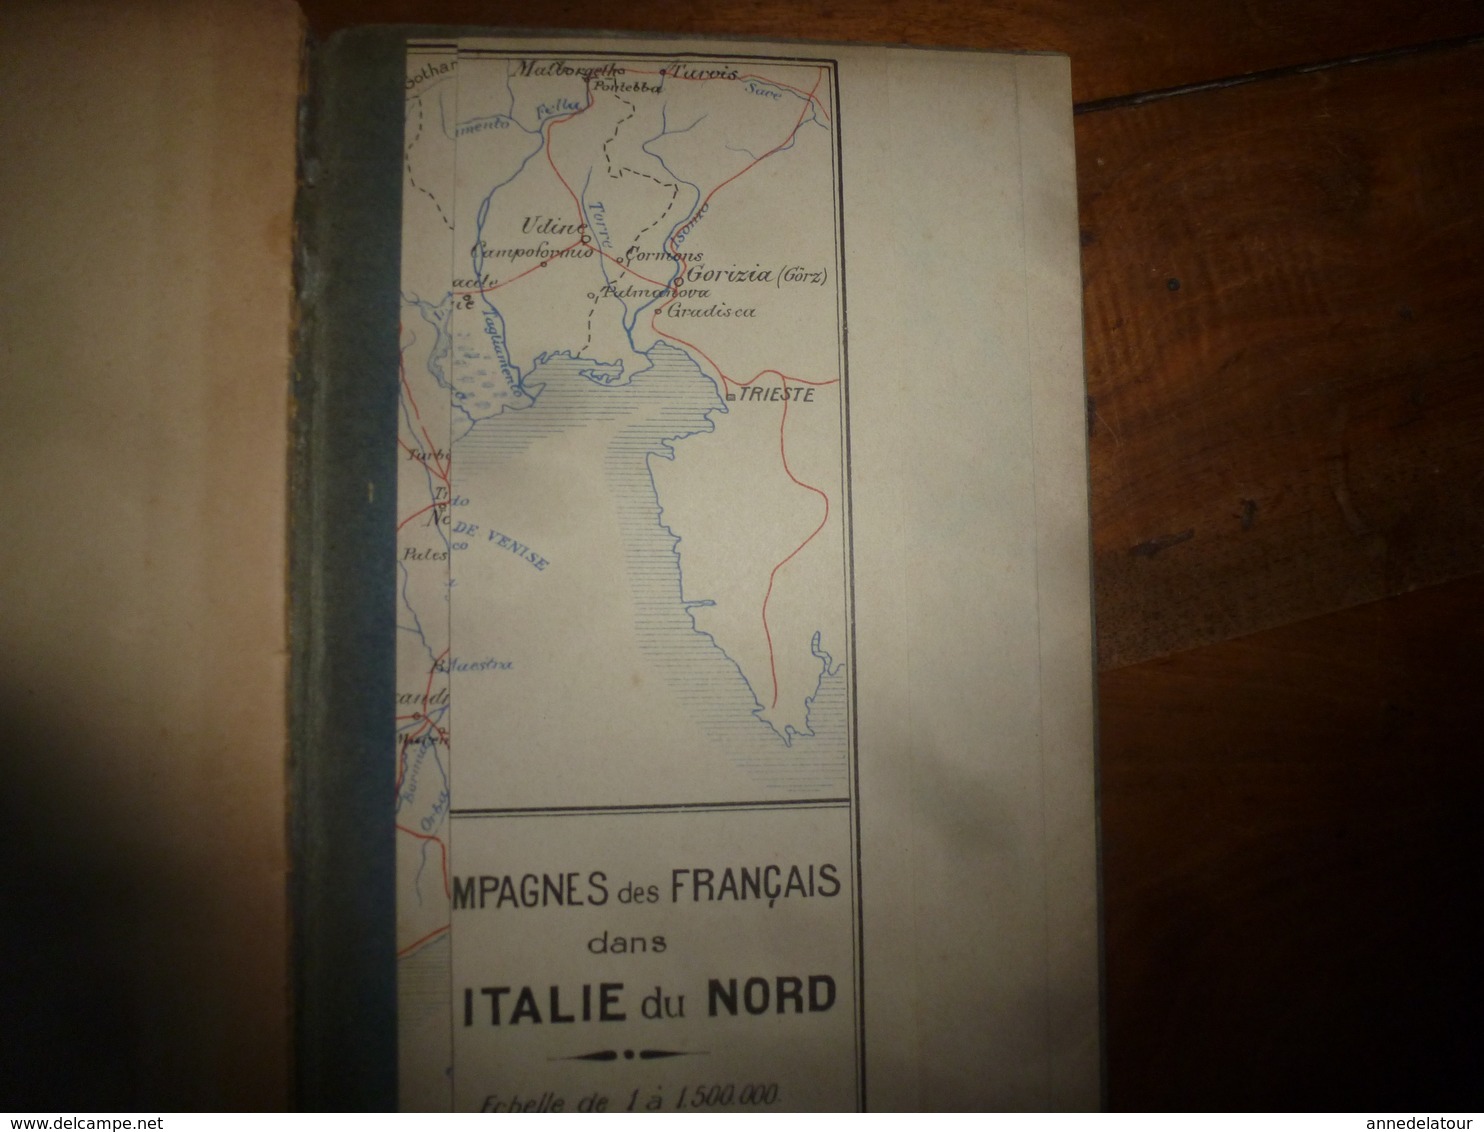 1918 LES ARMÉES FRANÇAISES EN ITALIE  -par le Lieutenant Louis Madelin - avec carte des campagnes dans l'Italie du Nord